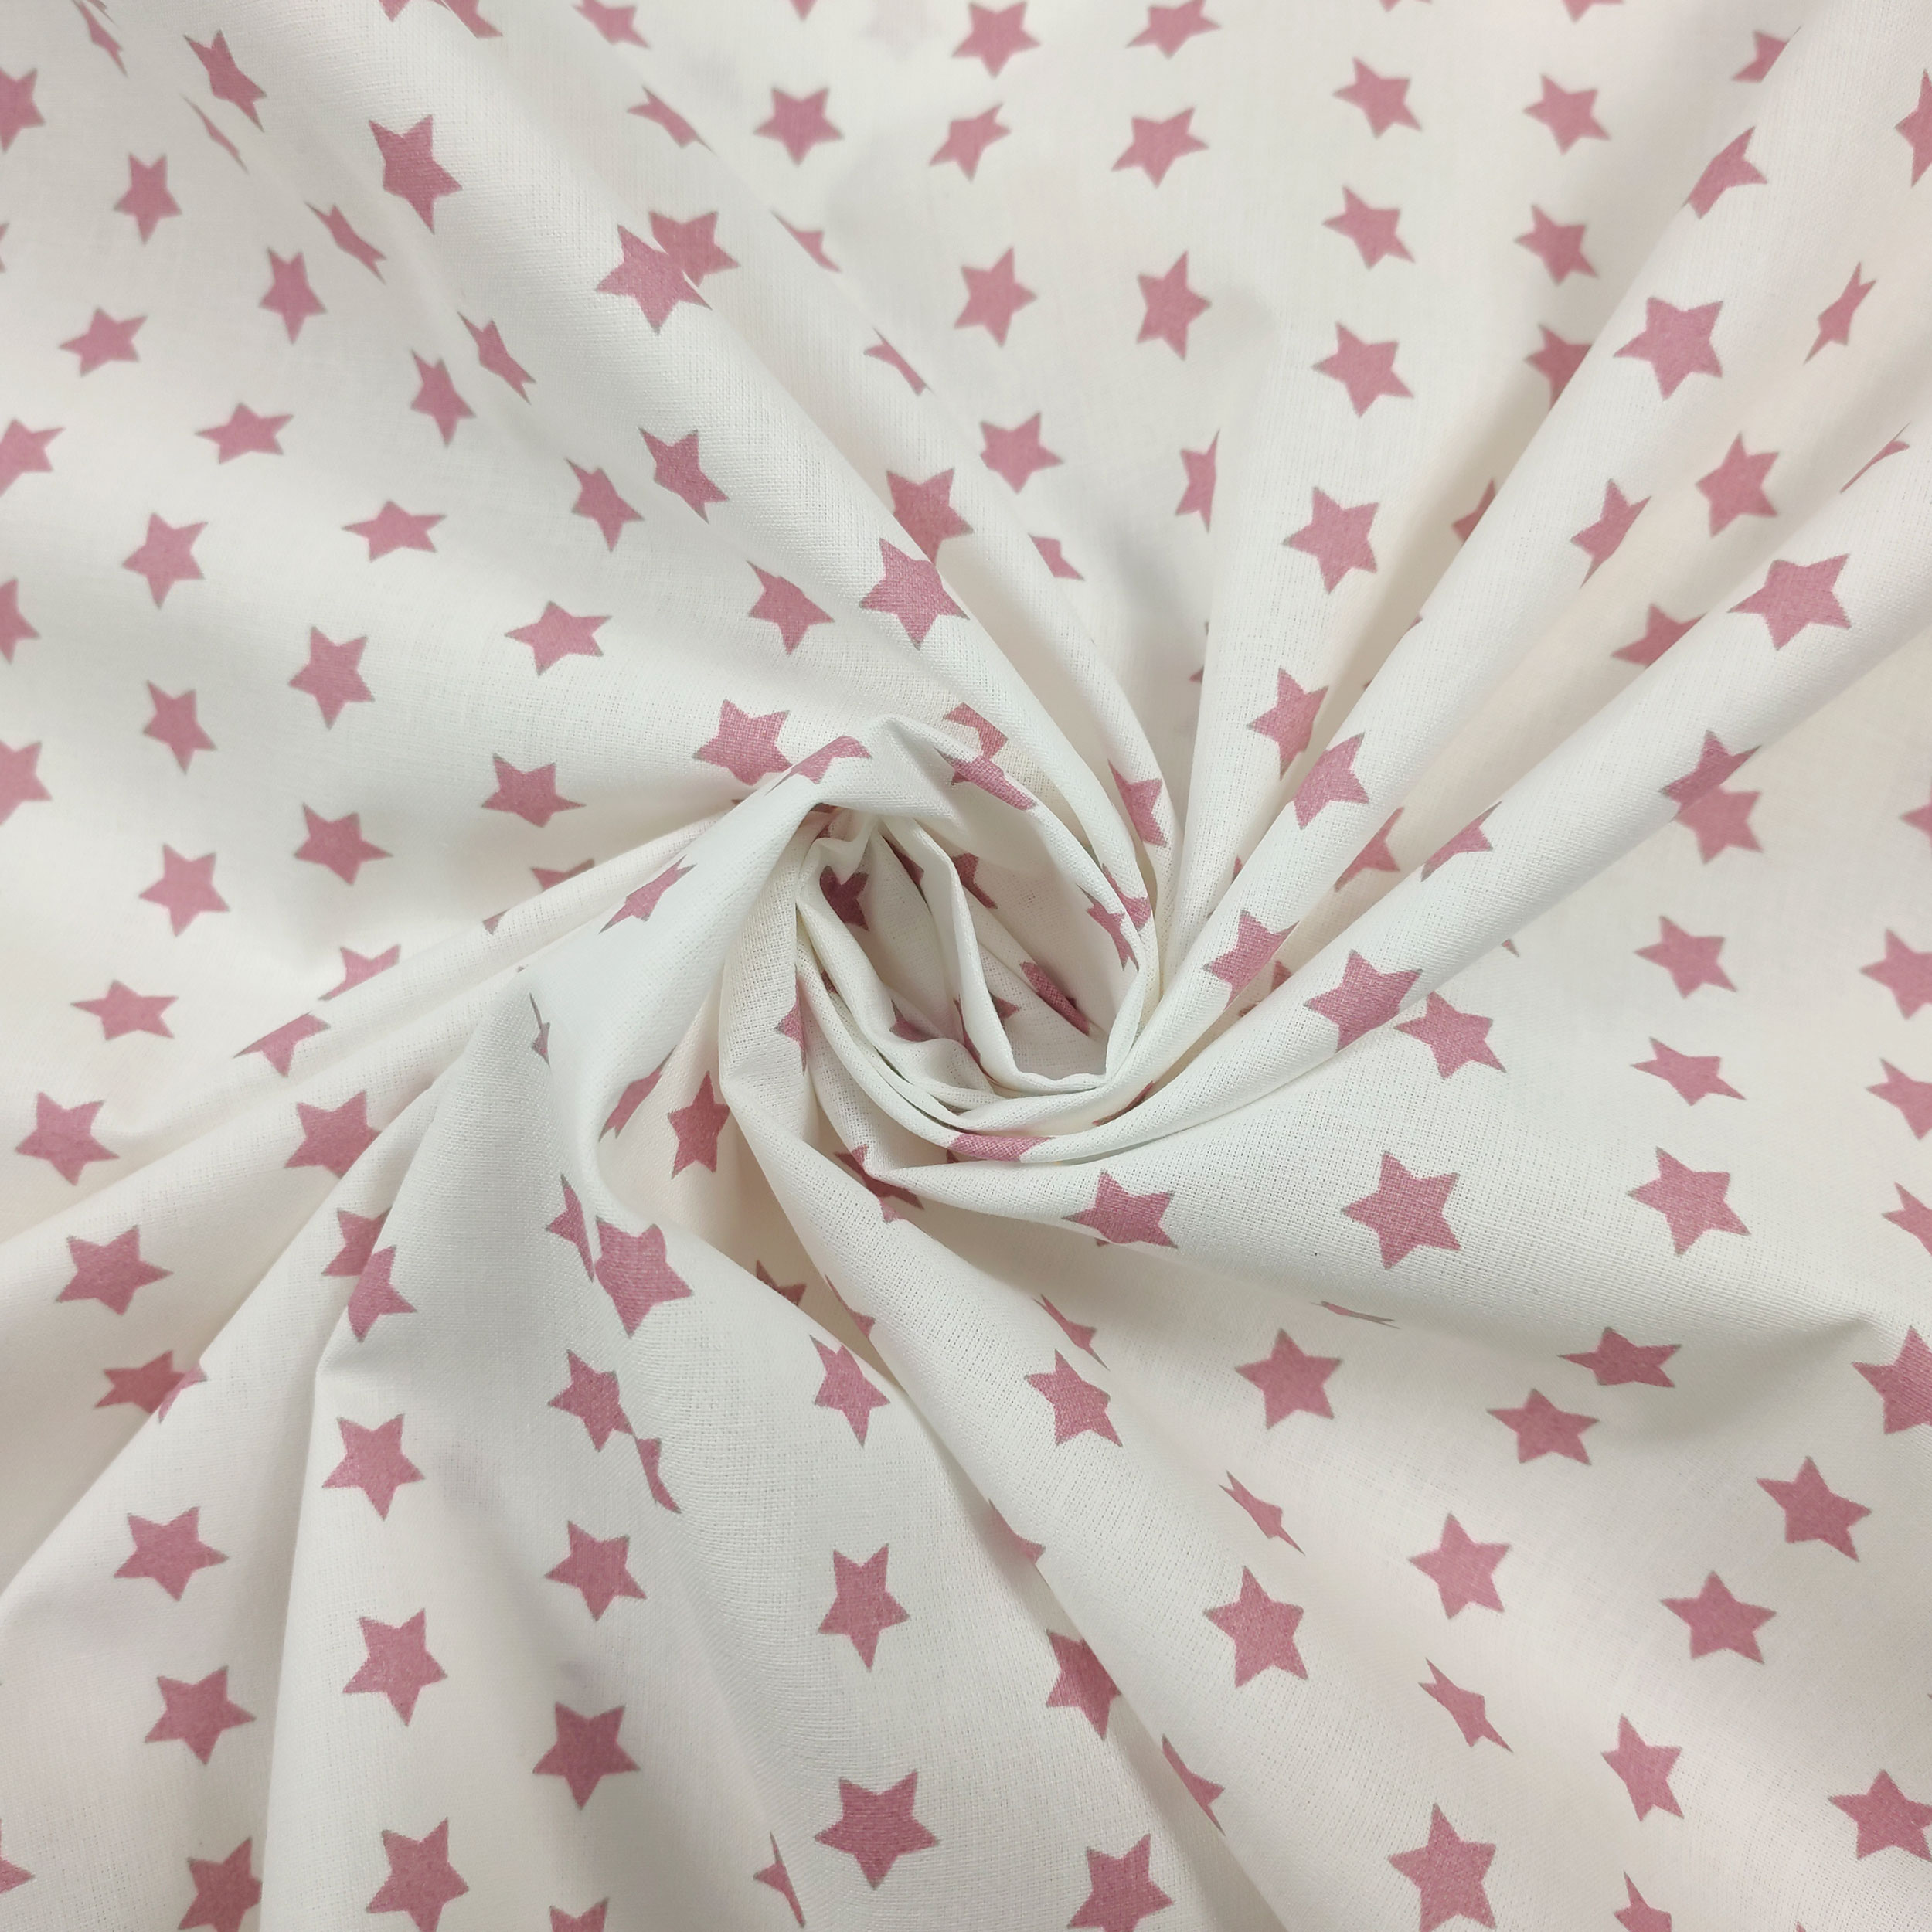 tessuto con stelle rosa antico sfondo bianco